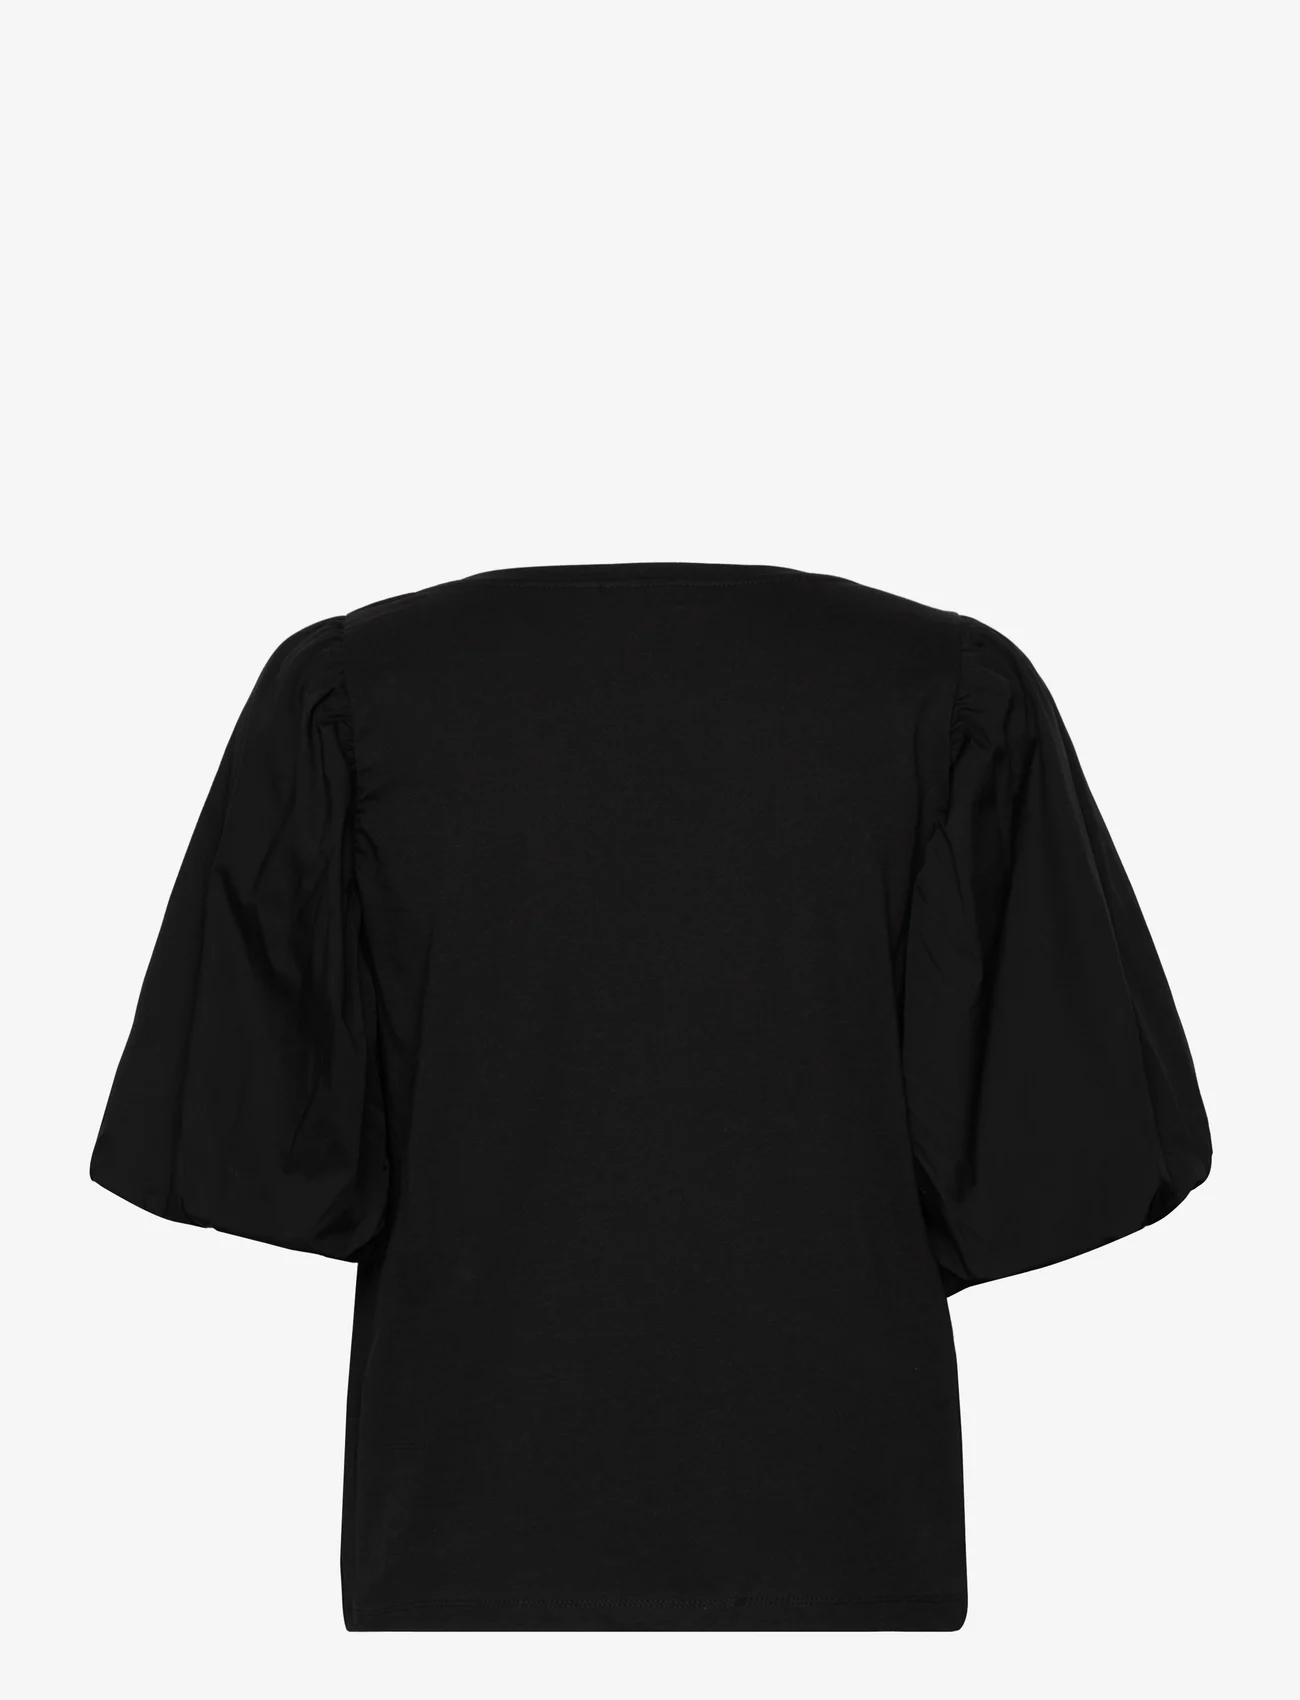 InWear - KisumeIW Top - t-skjorter - black - 1